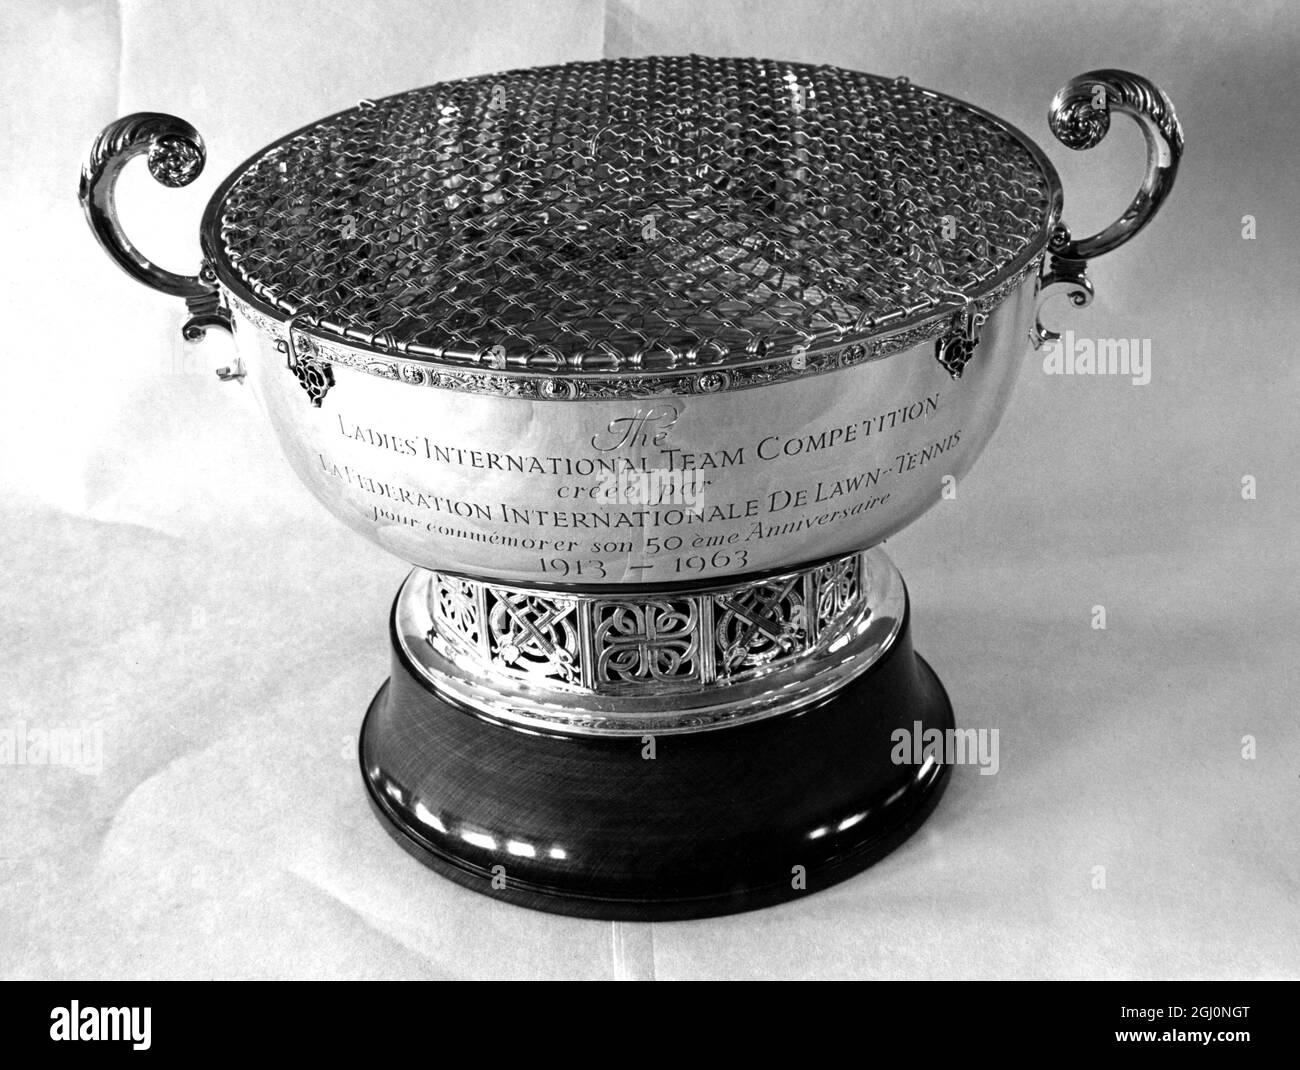 La coupe de la Fédération - 17 juin 1963, qui a été instituée en 1963 pour célébrer le 50ème anniversaire de l'I.L.T.F. et sera décernée à l'équipe qui remportera le Concours international des dames au Queen's Club de Londres le 17-20 juin. ©TopFoto Banque D'Images